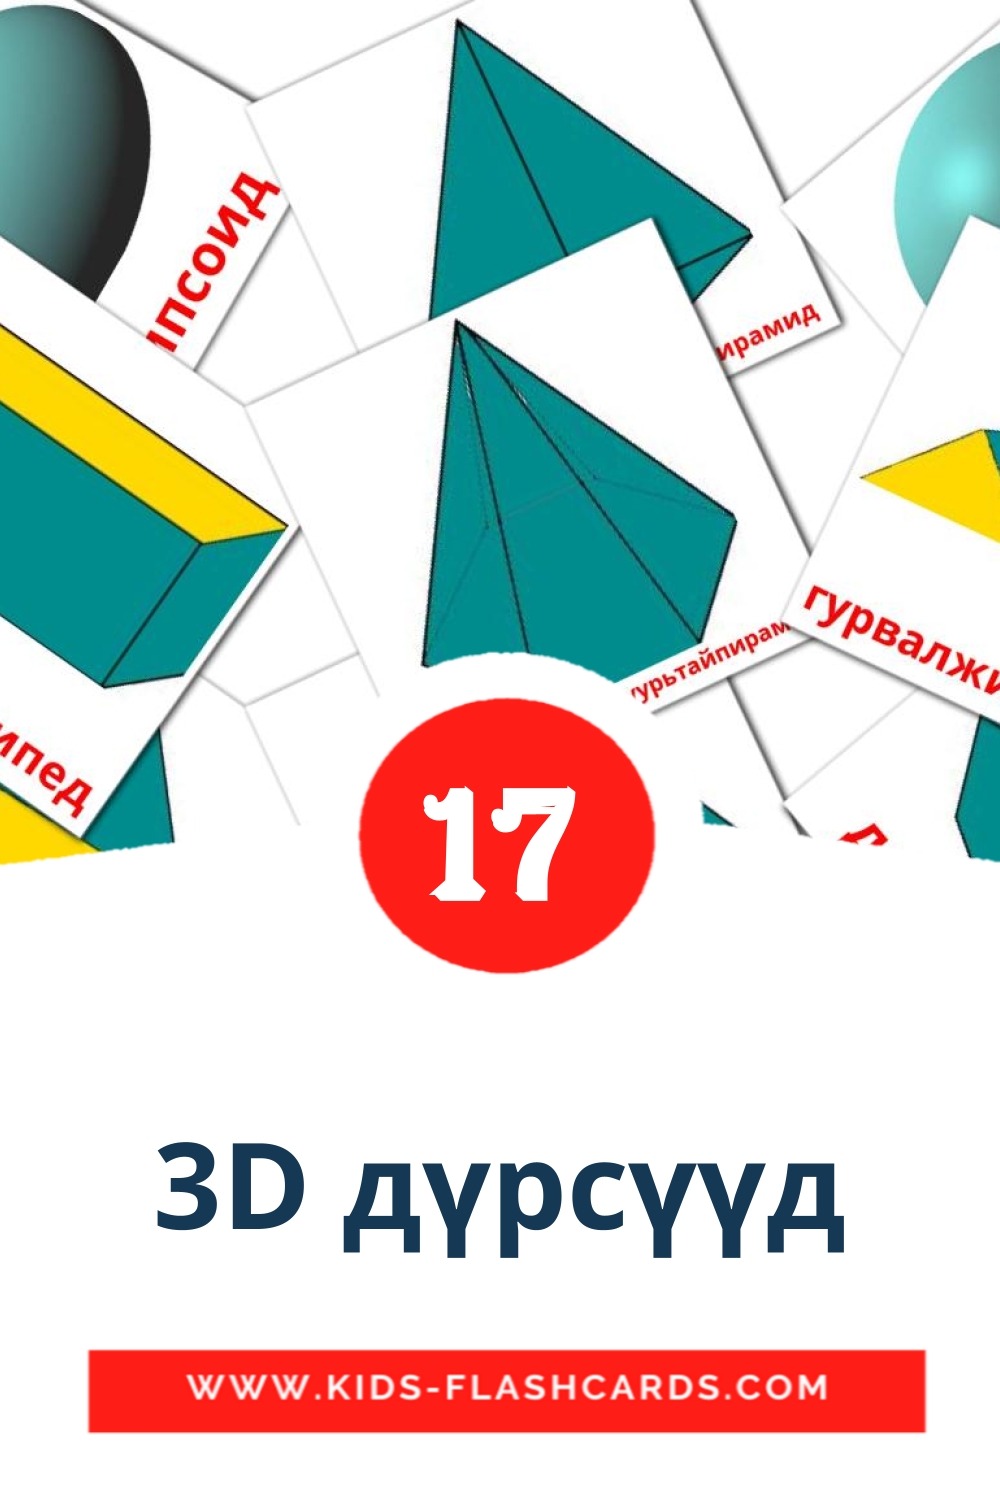 17 3D дүрсүүд fotokaarten voor kleuters in het mongolisch